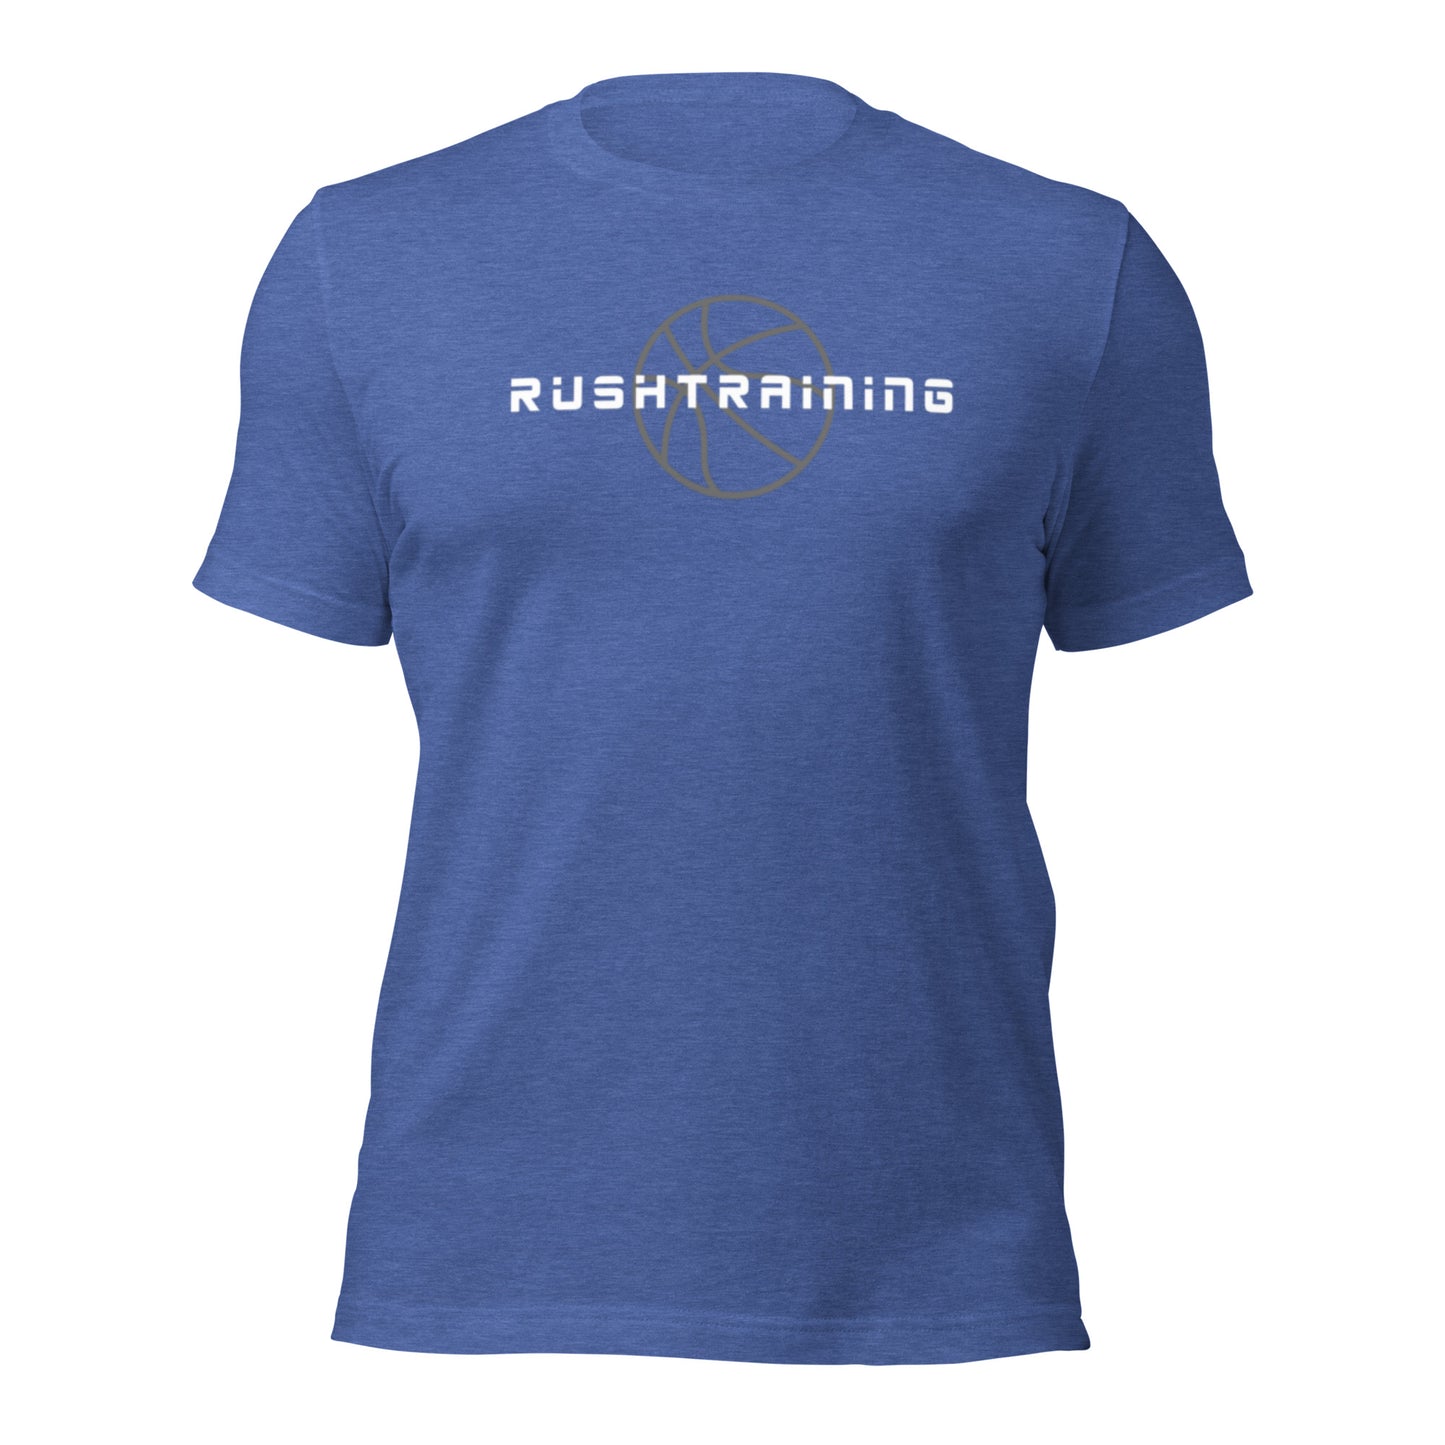 Rush Training Unisex t-shirt